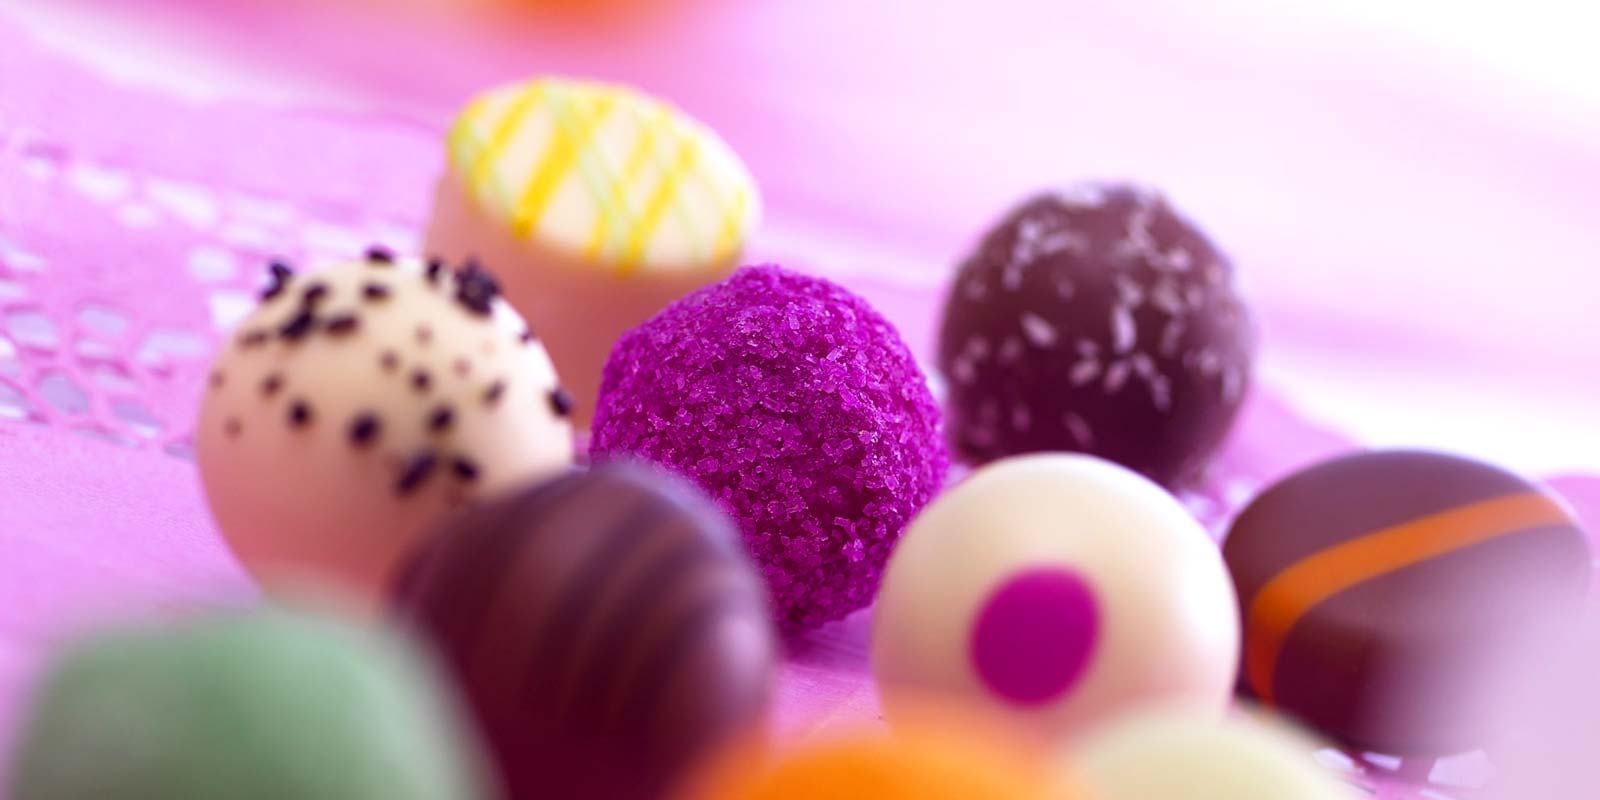 Bombons e chocolates de Peter A empresa Peters produz doces e chocolates desde 1936.